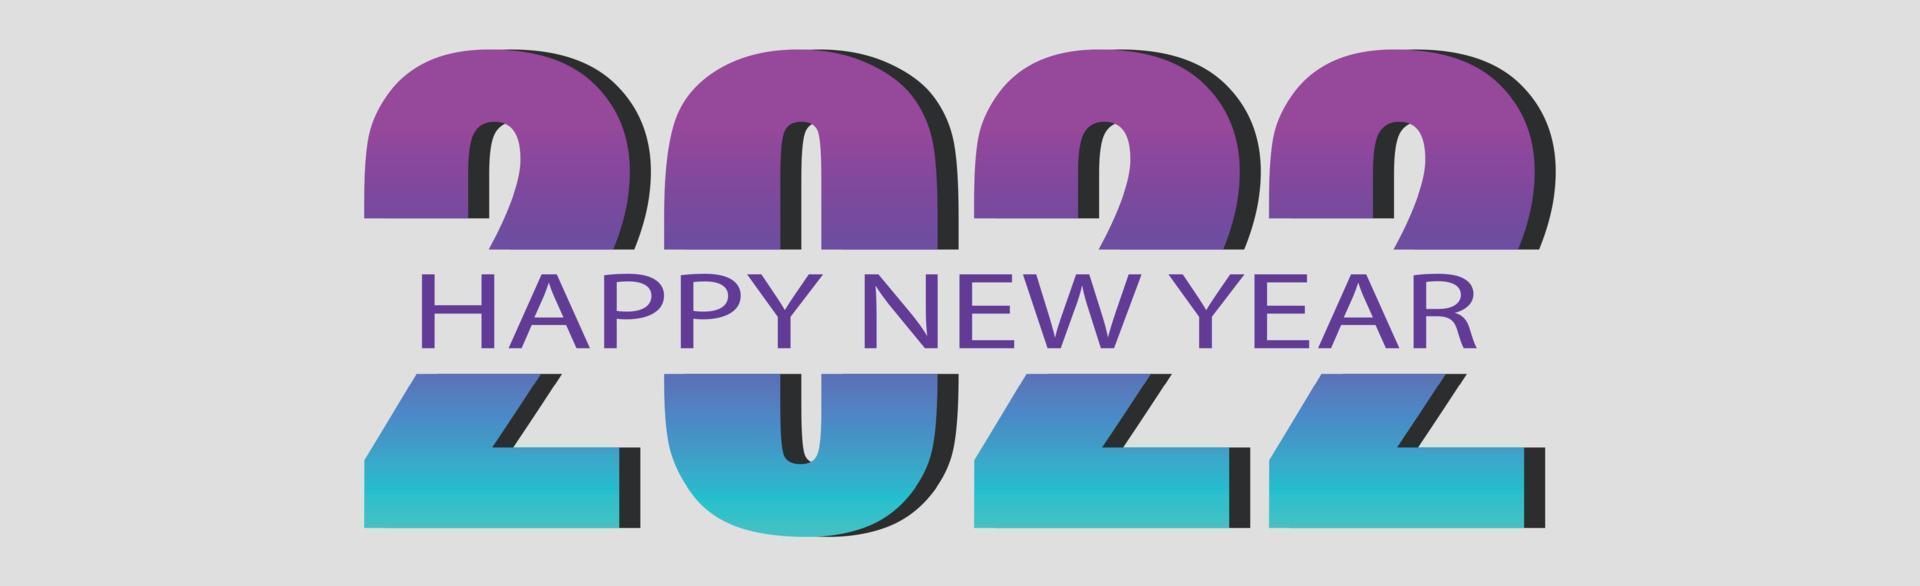 Feliz año nuevo 2022, vacaciones de Navidad, banner web para publicidad - vector